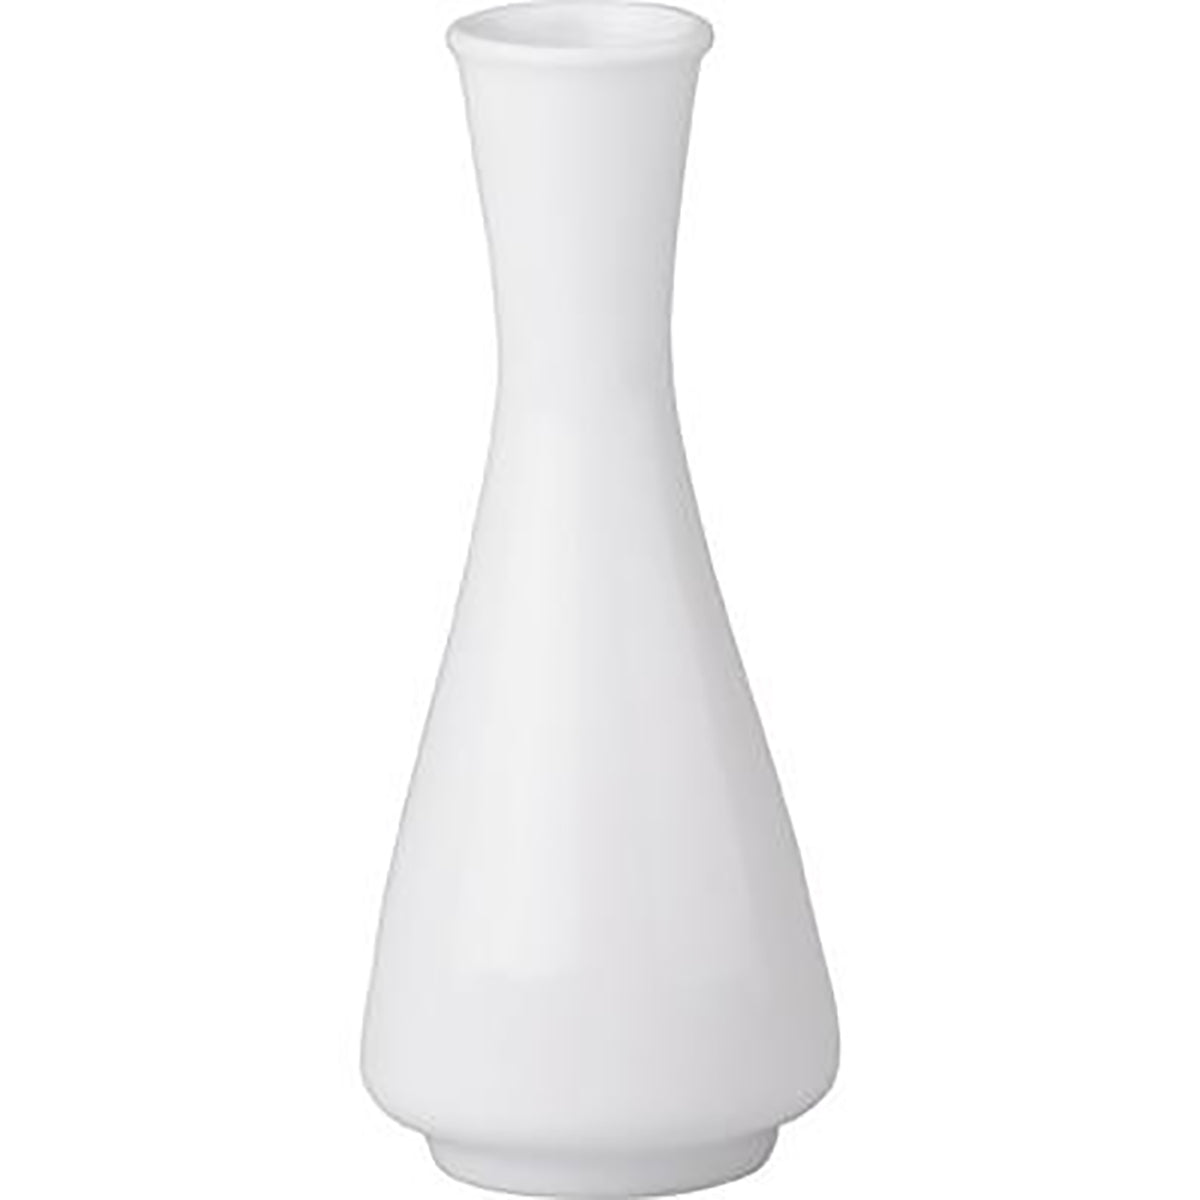 94098 Royal Porcelain Chelsea Flower Vase 100mm (0232) Tomkin Australia Hospitality Supplies